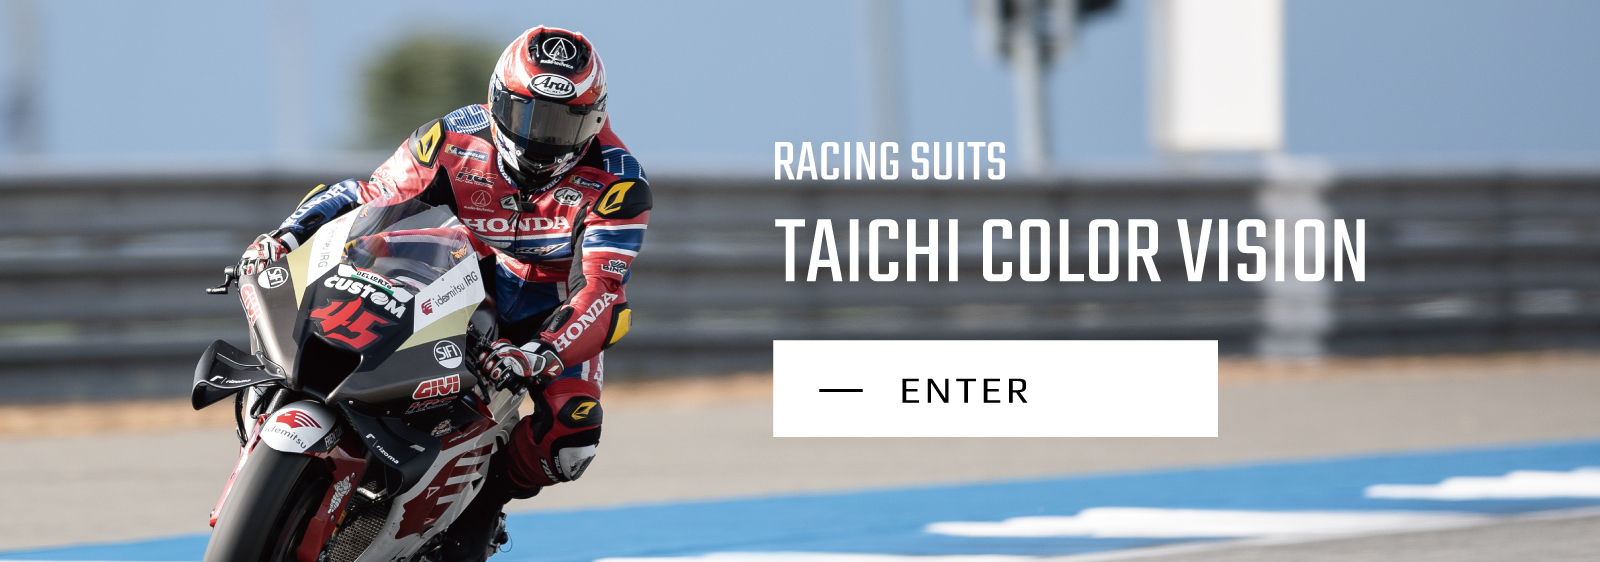 スーツRS タイチ  レーシングスーツ  革ツナギ taichi